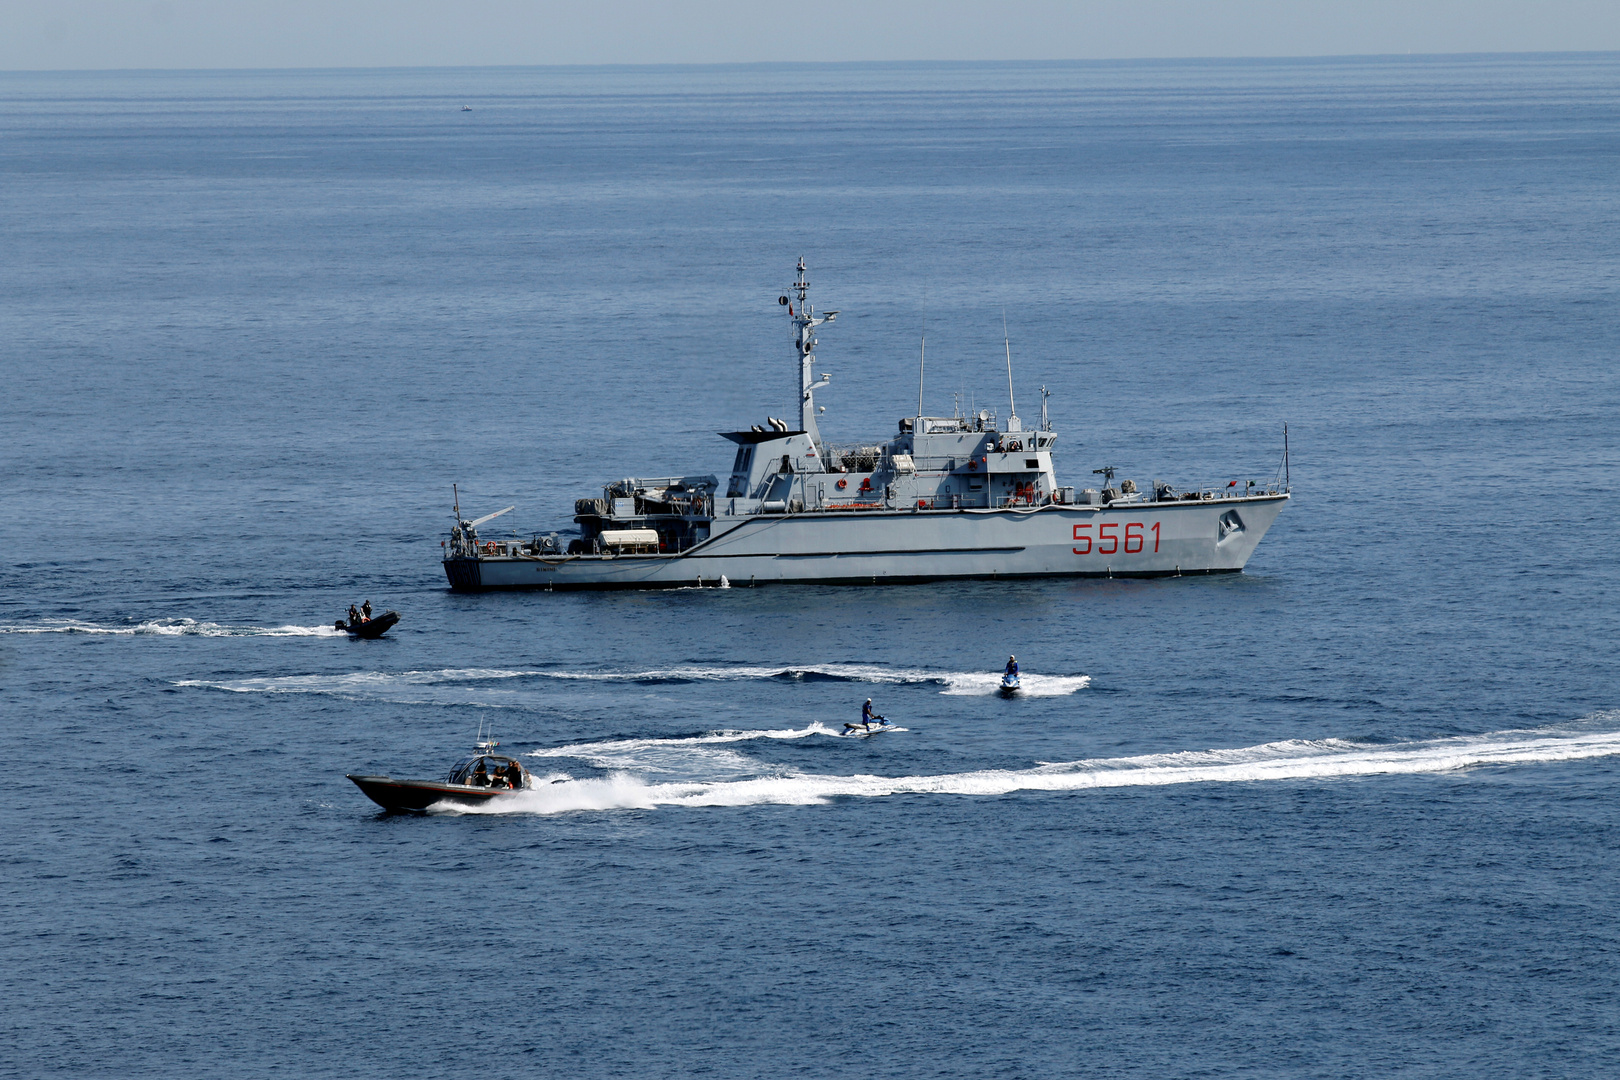 البحرية الإيطالية تعلن عن تدخلها لتجنب اعتراض زورق ليبي لقوارب صيد إيطالية